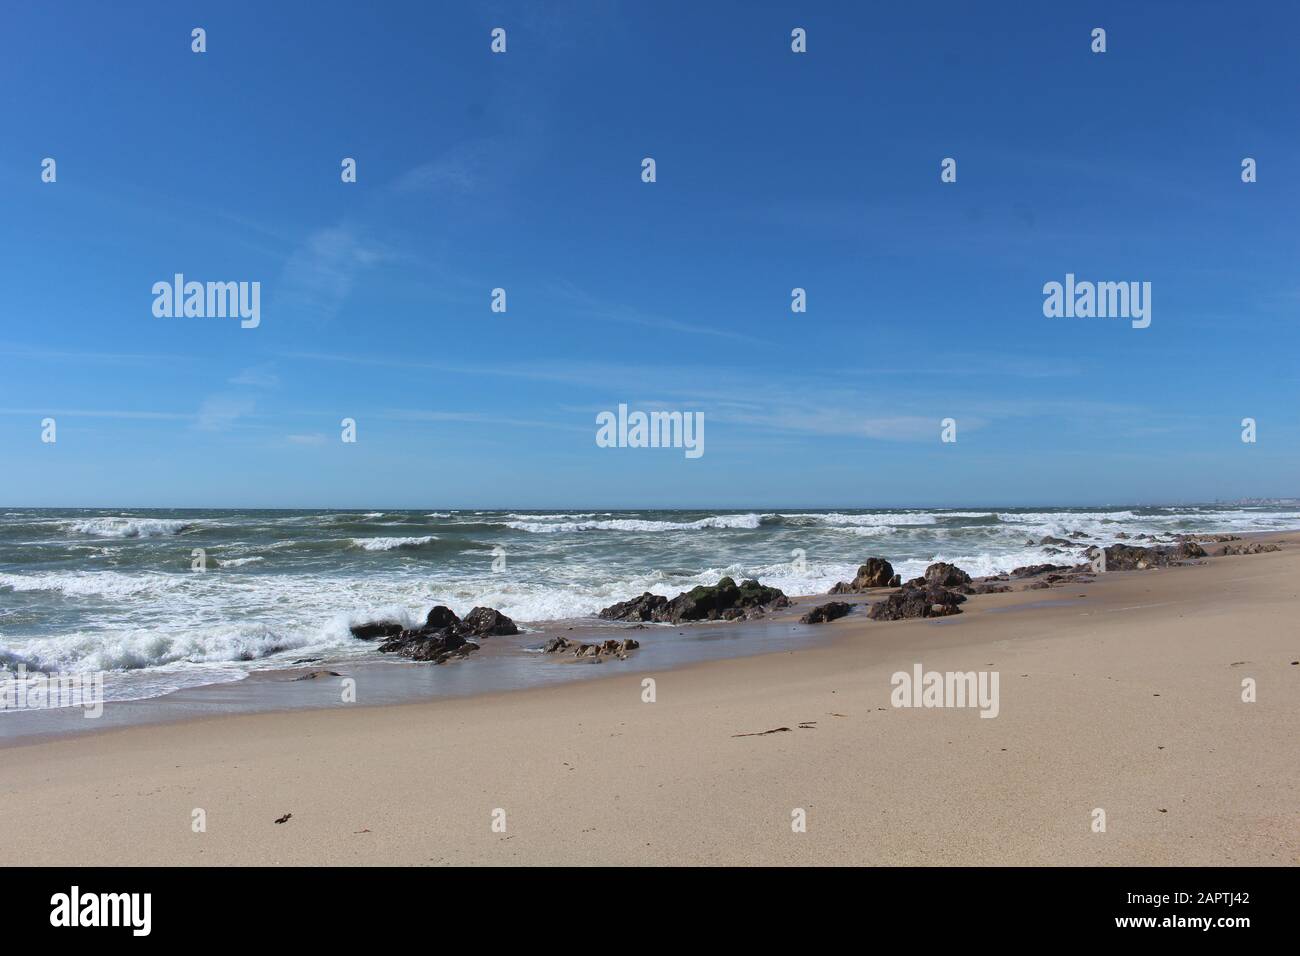 Spiaggia di sabbia con alcune rocce, mare ondulato e cielo blu Foto Stock